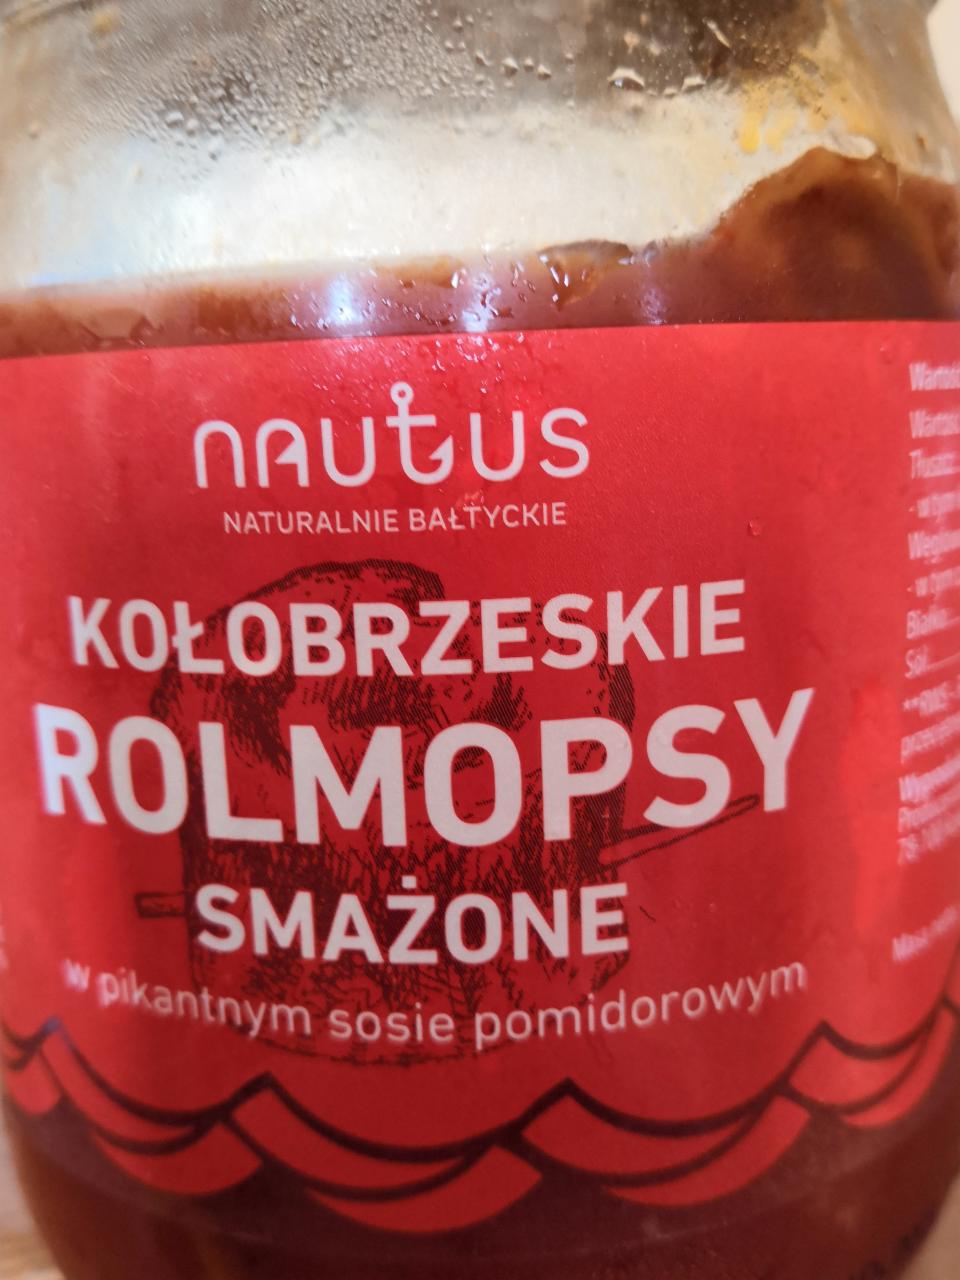 Fotografie - Kołobrzeskie rolmopsy smażone w pikantnym sosie pomidorowym Nautus